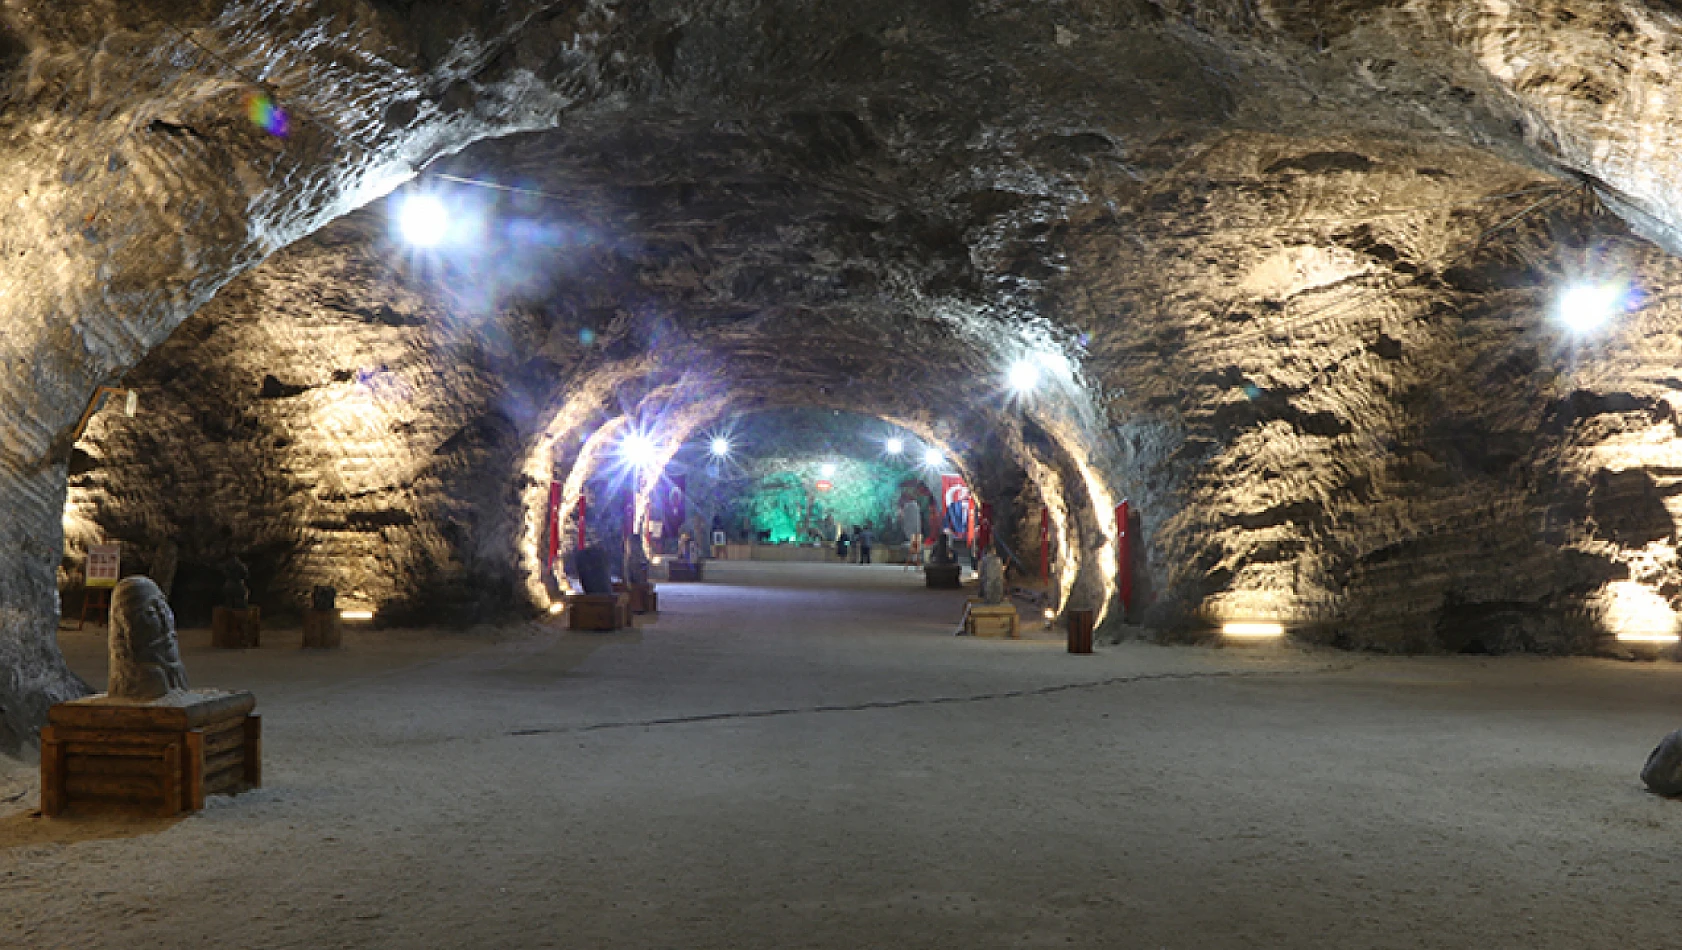 Yerin 150 metre altın Hititlerden kalma tuz mağarası üretime devam ediyor!